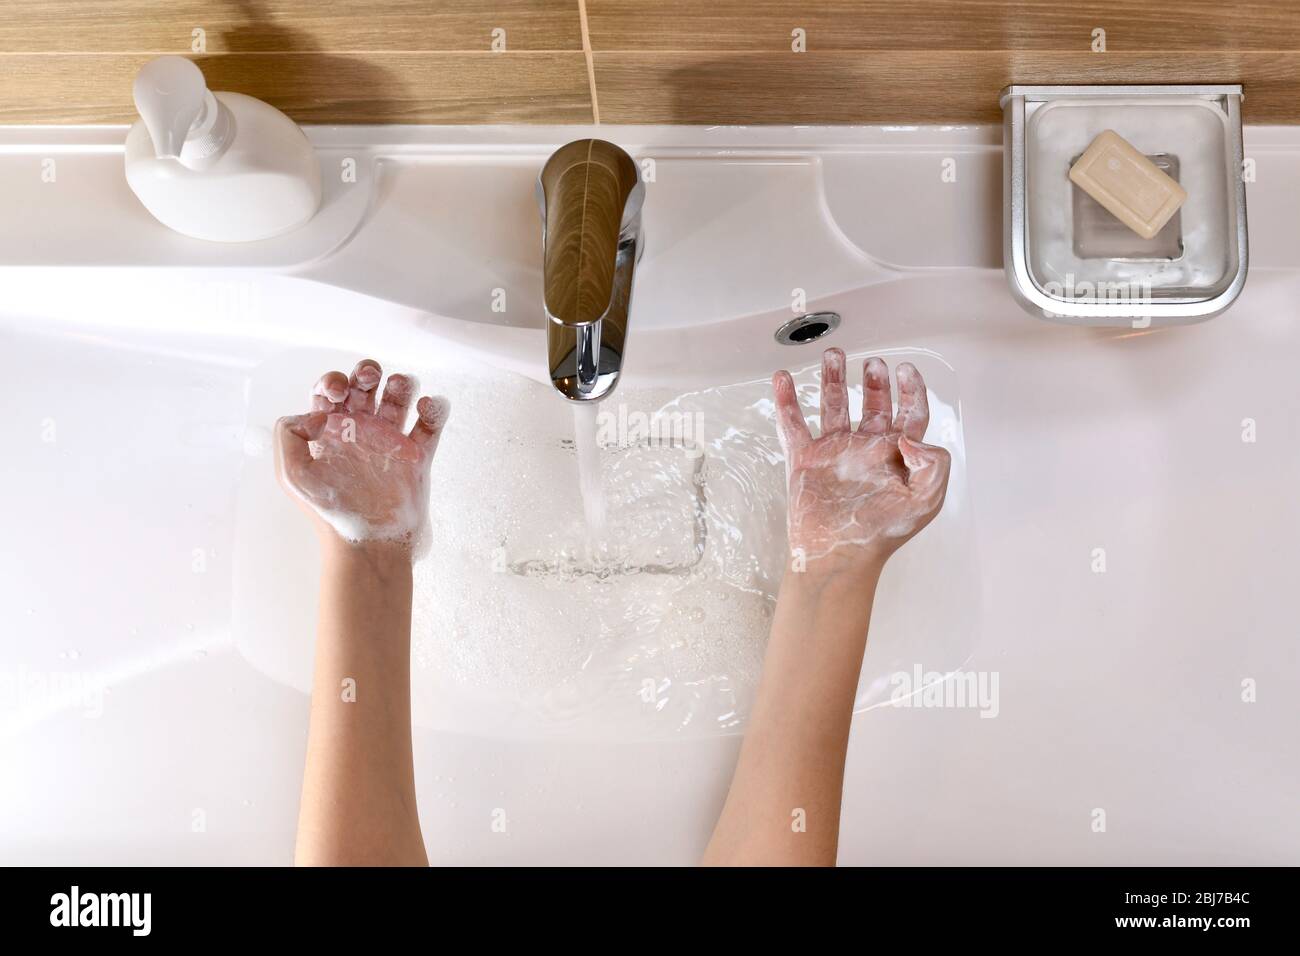 Das Kind zeigt die Handflächen, die mit Seifenschaum gefüllten Händen mit gebogenen Fingern über dem Waschbecken mit Wasser gegossen werden. Stockfoto